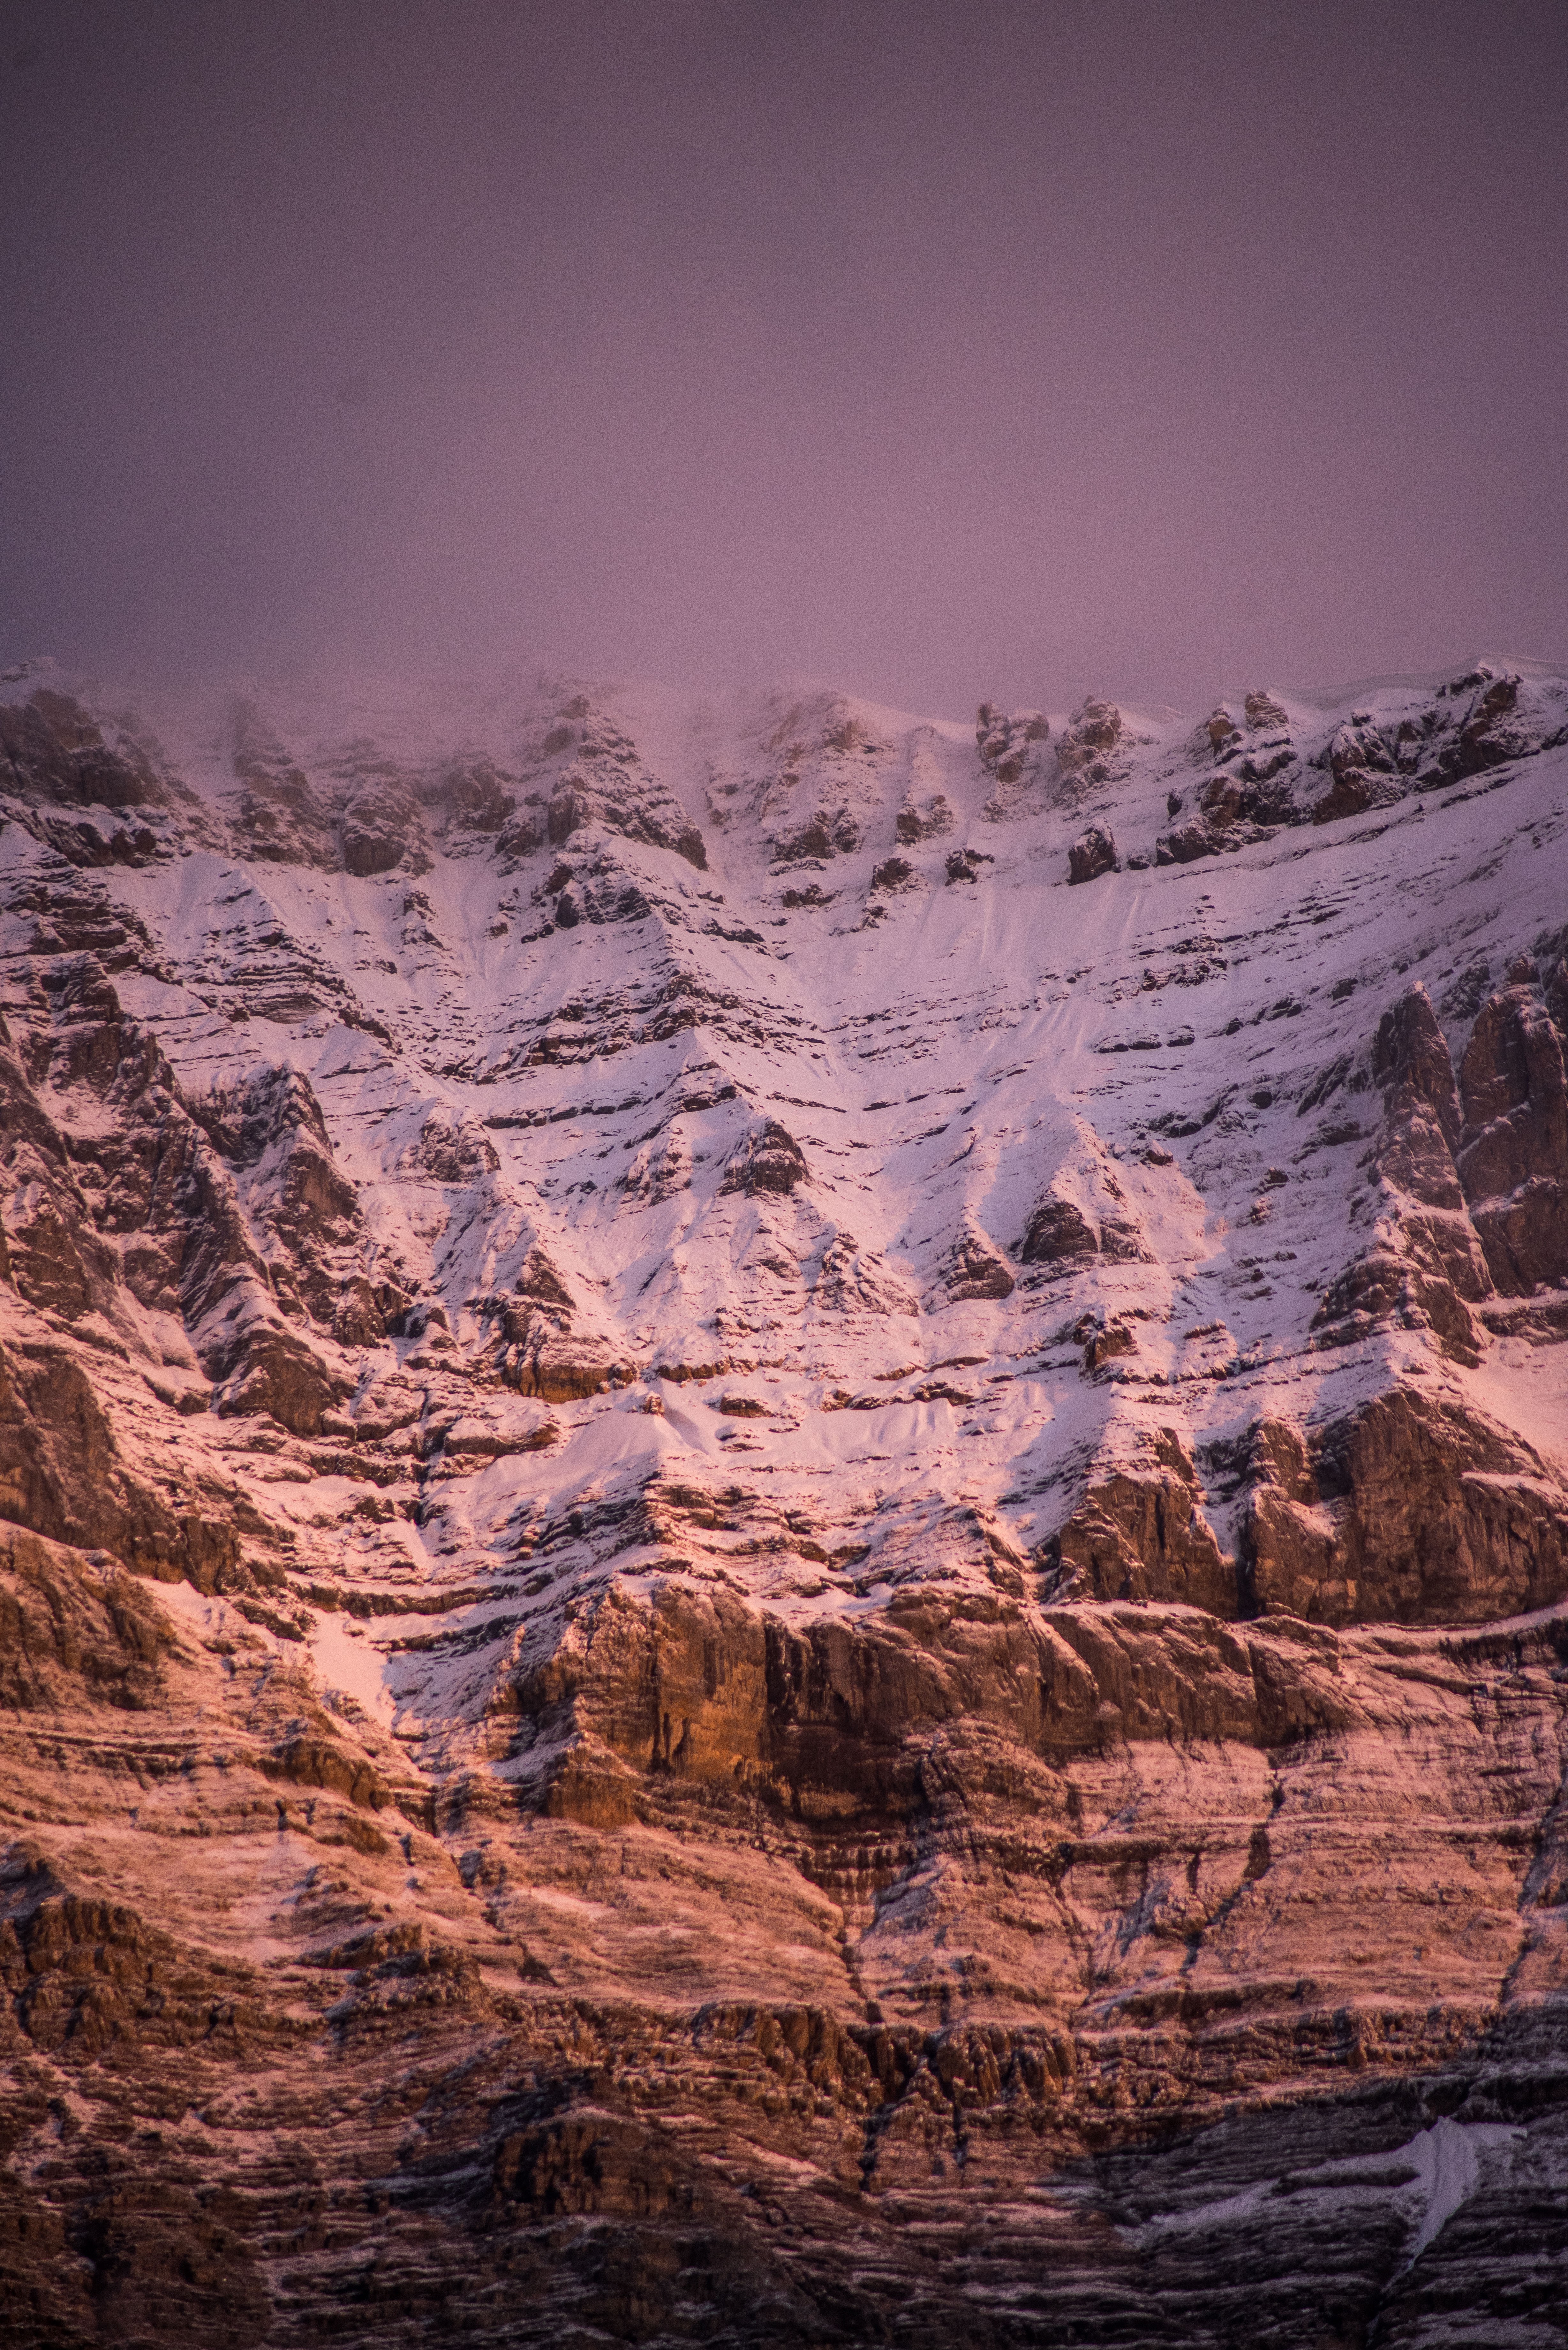 Teinte rose sur la photo des montagnes enneigées 